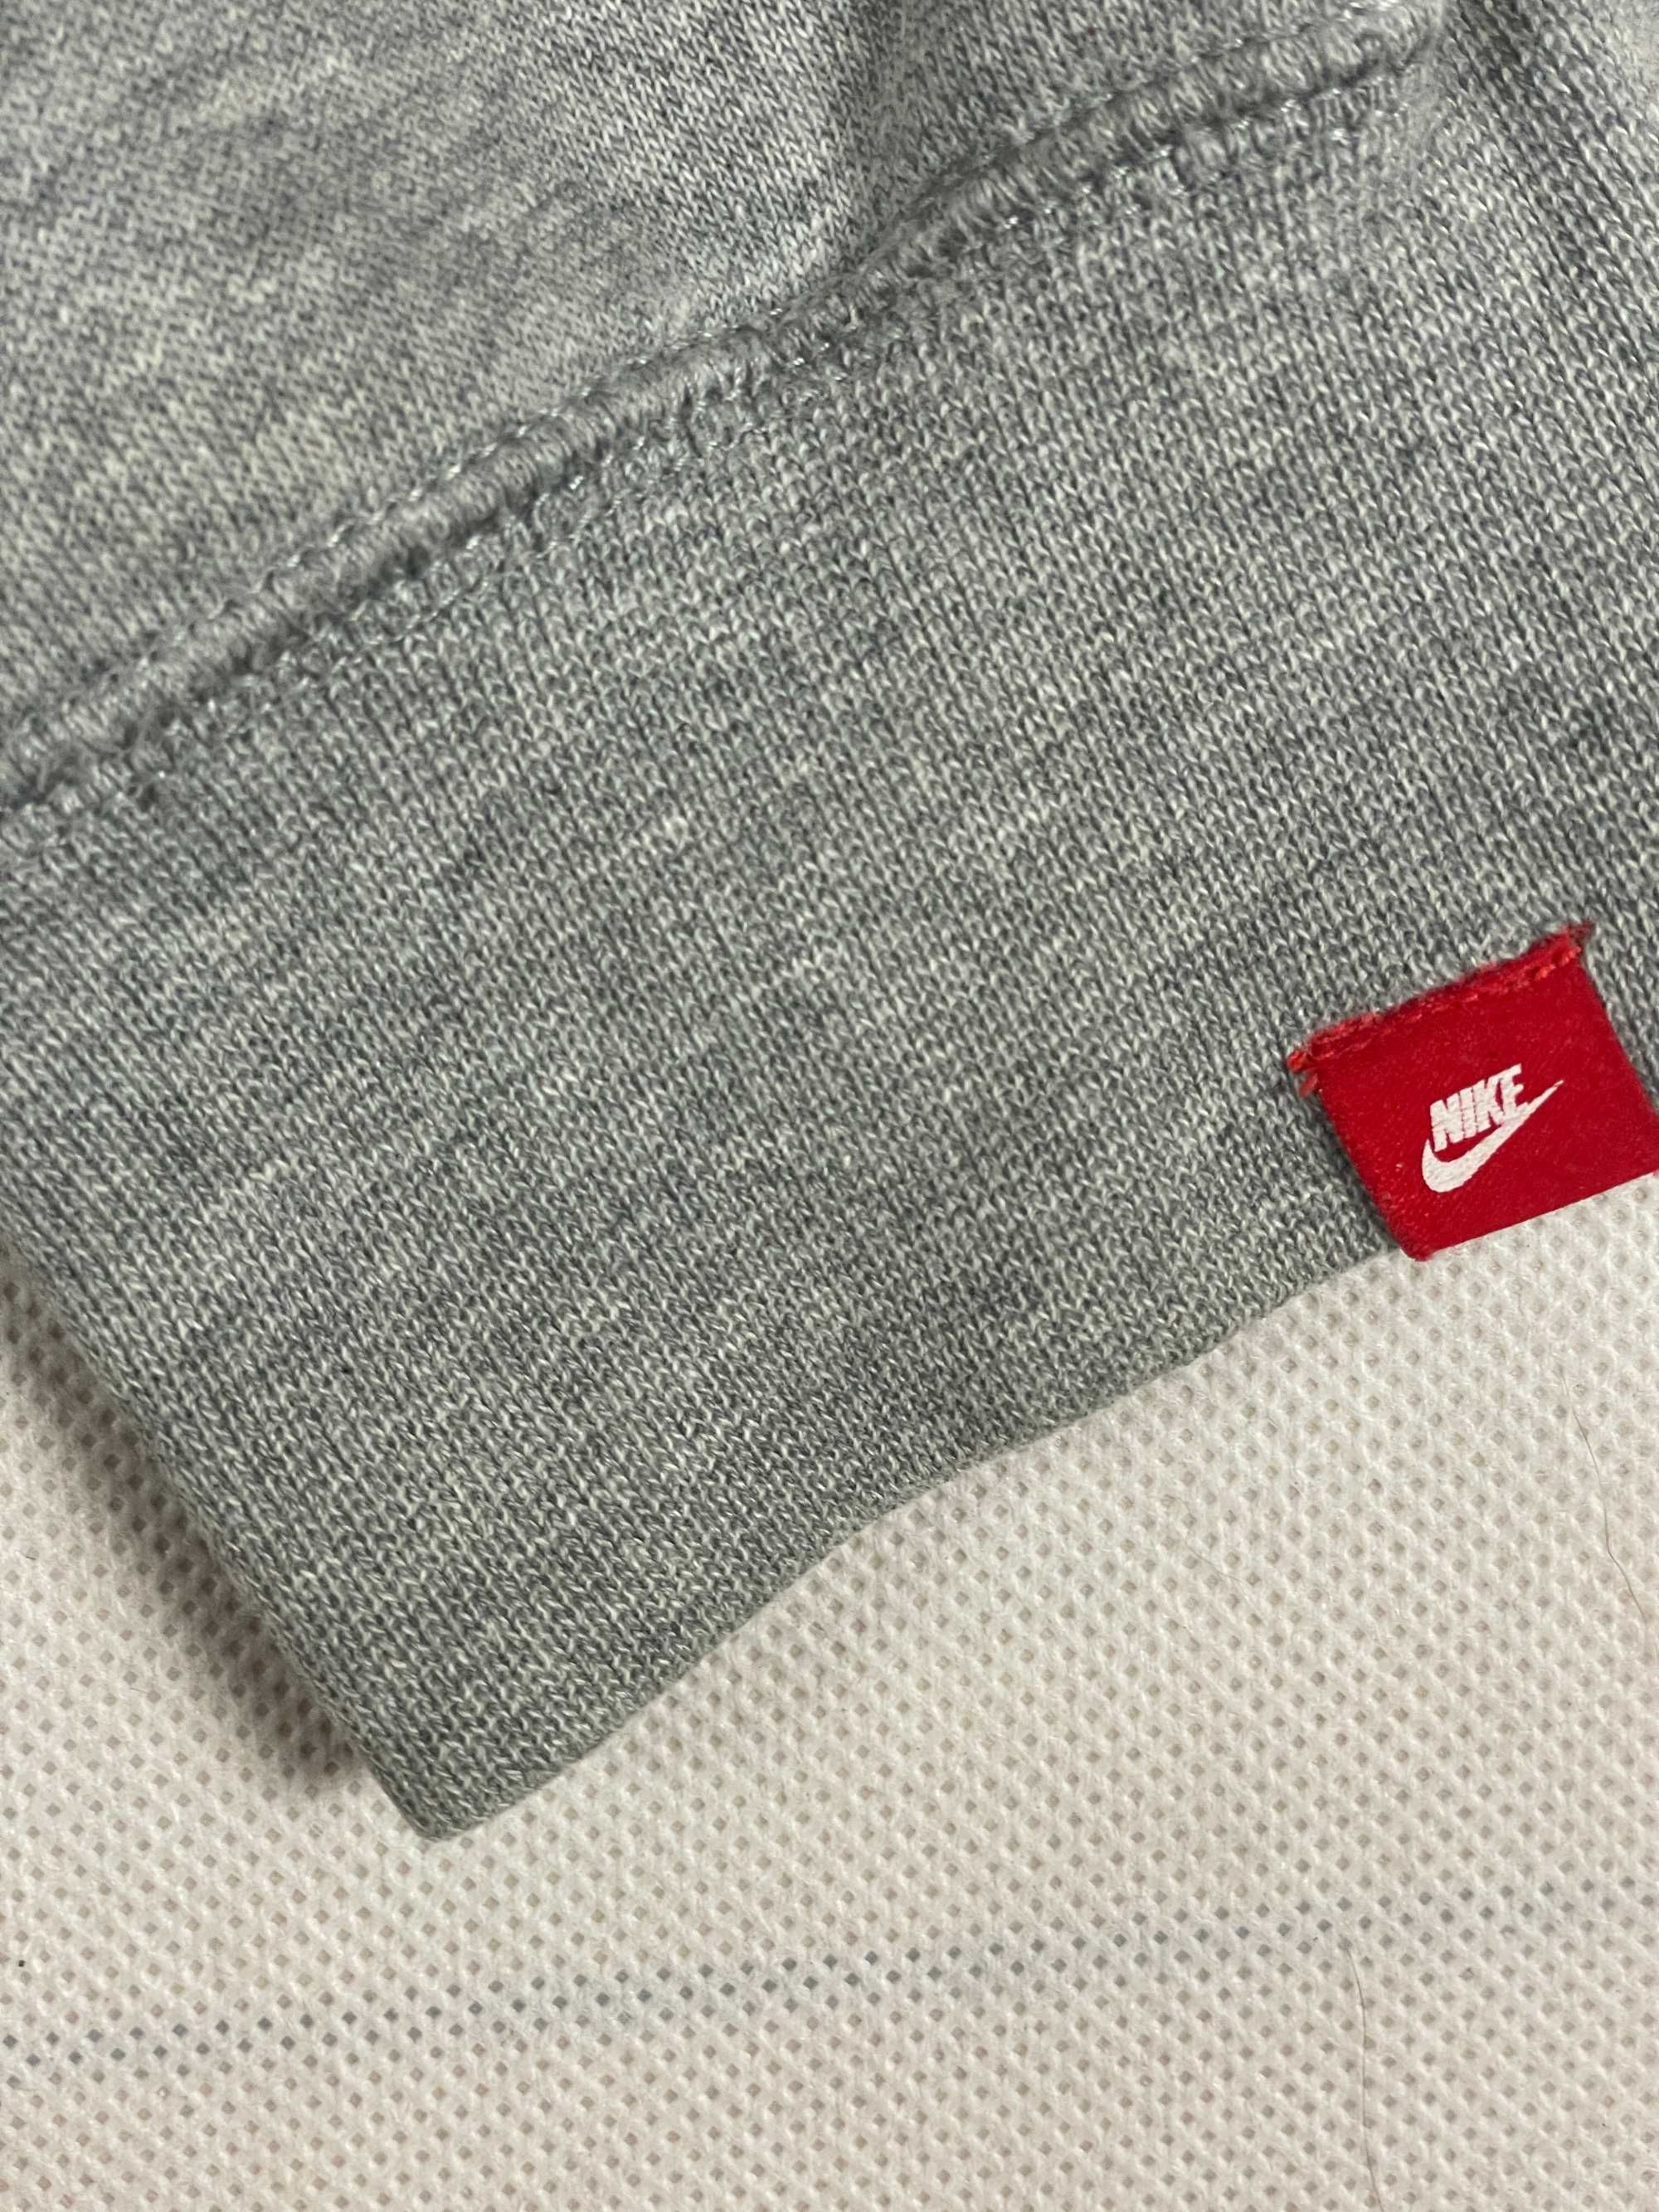 Nike Bluza Męska Szara Bez Kaptura Logo Unikat Klasyk M L